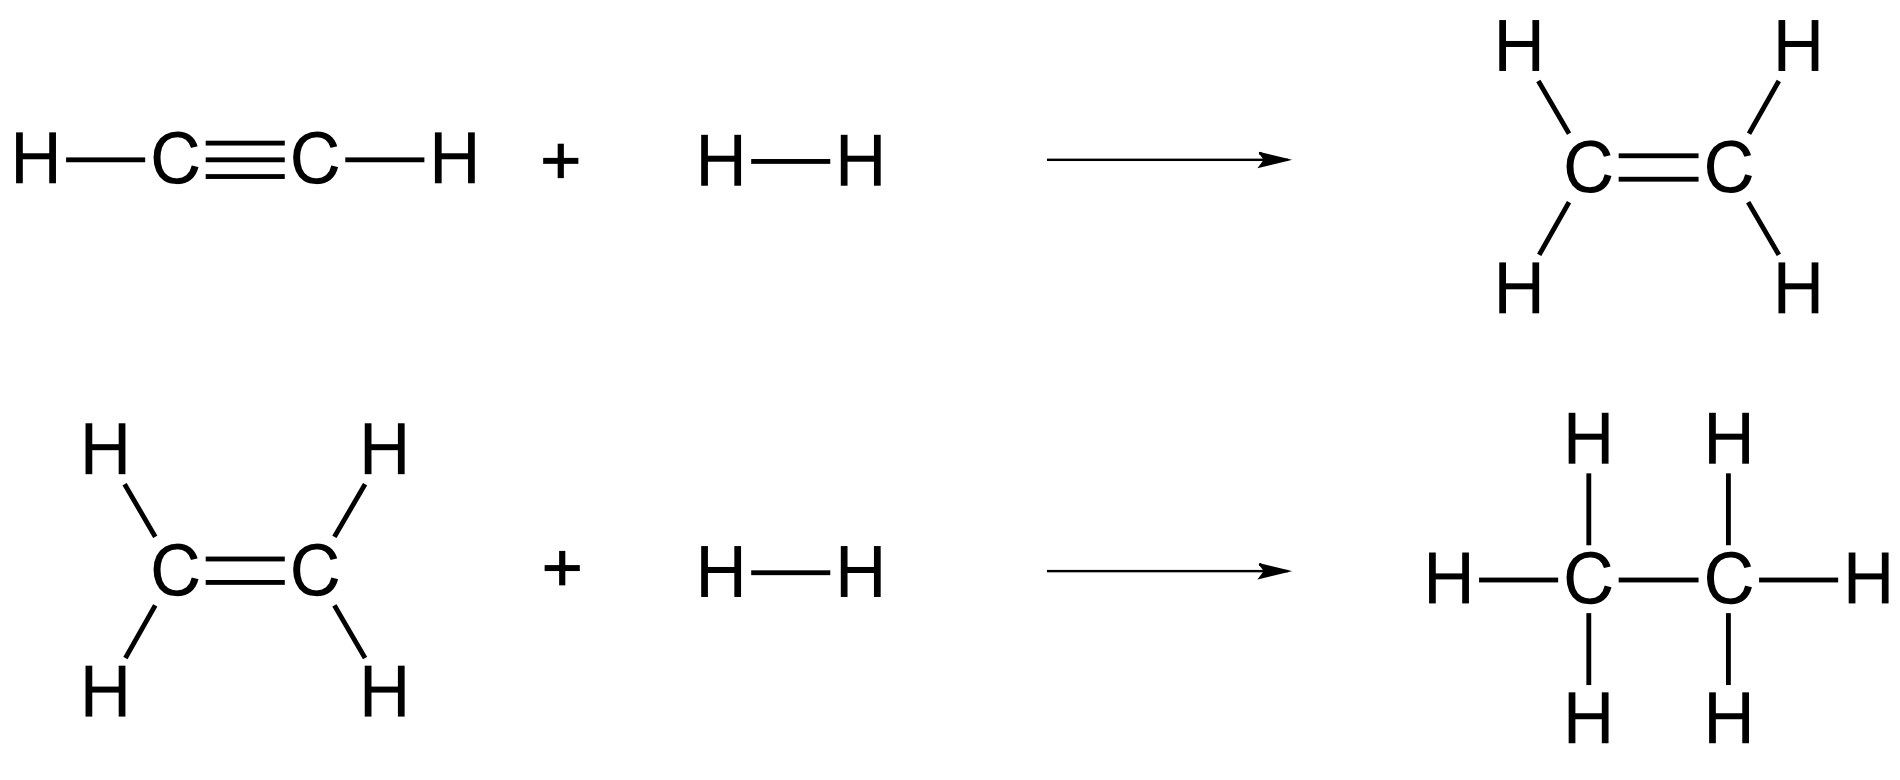 Addition von Wasserstoff an Ethin zu Ethen und Ethan - Hydrierung